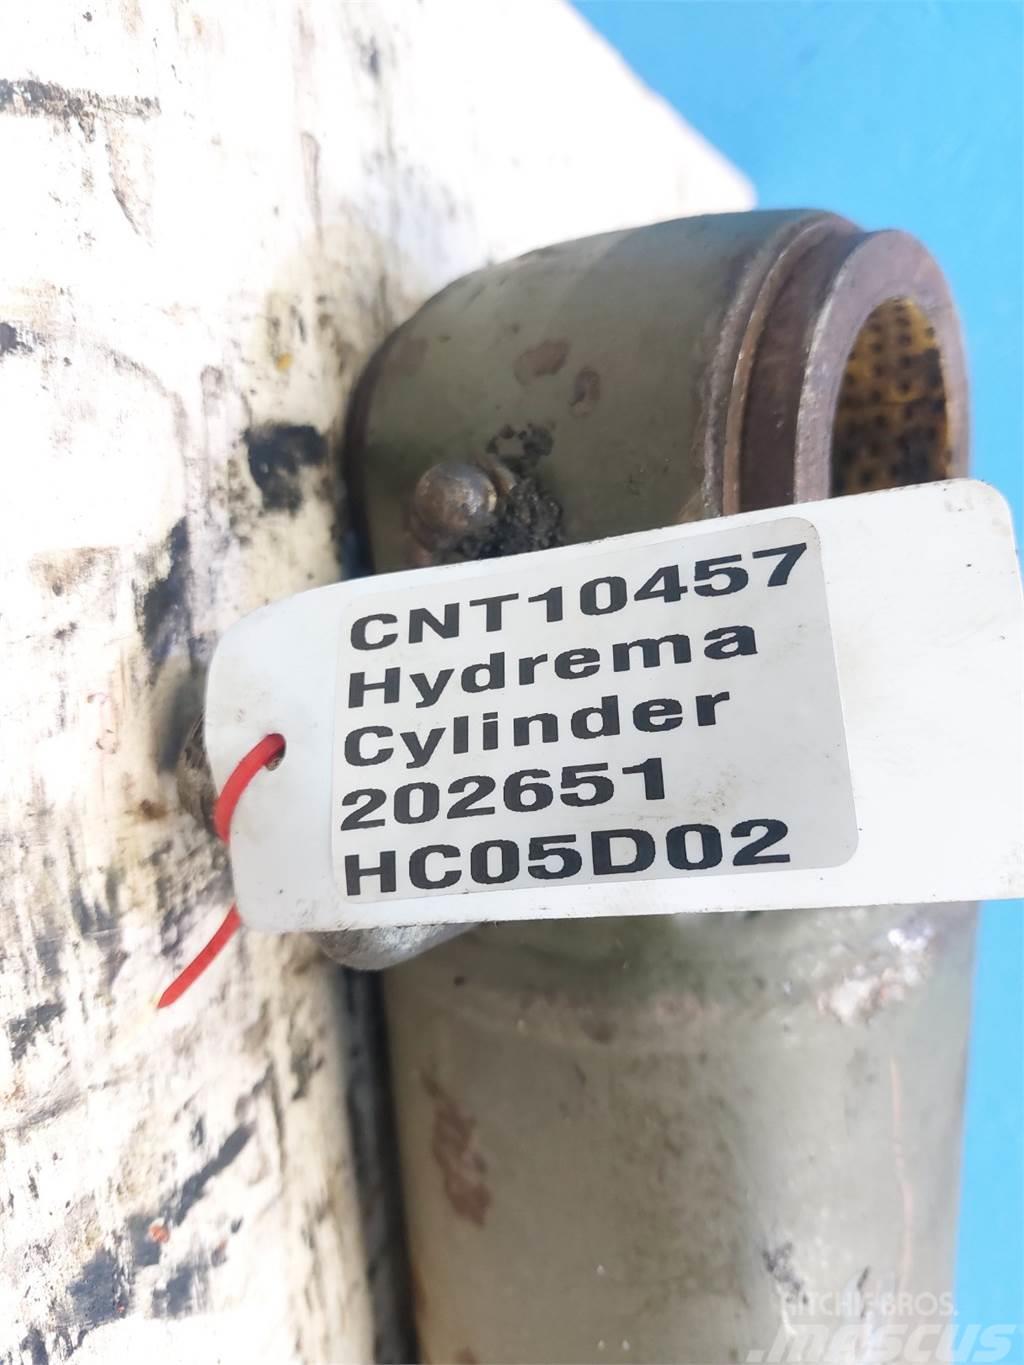 Hydrema 906B Retroescavatori